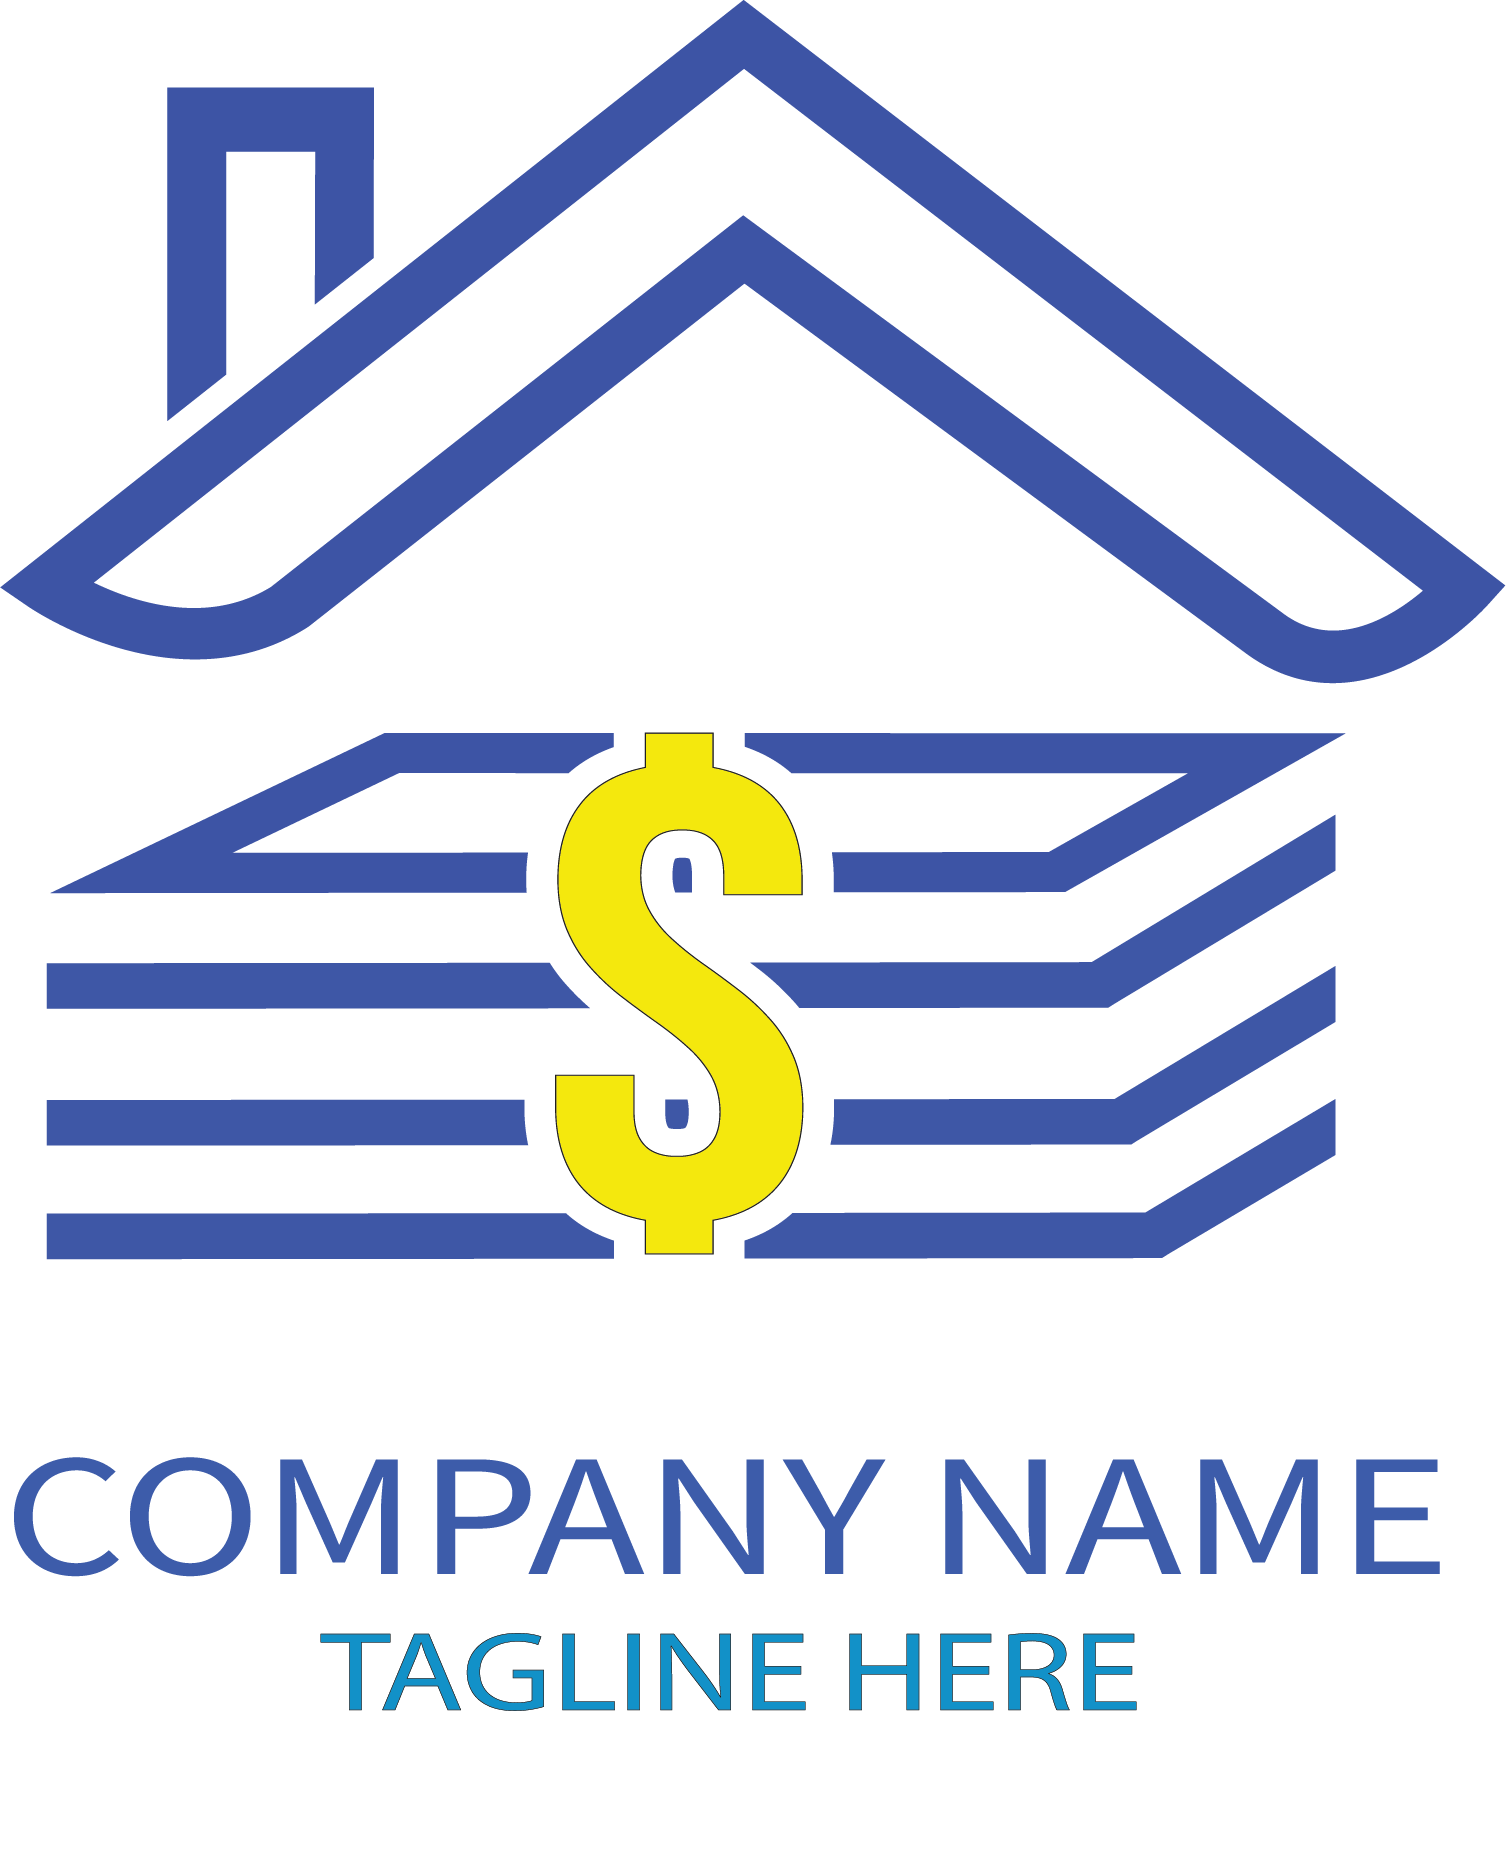 Money Logo Design cover image.